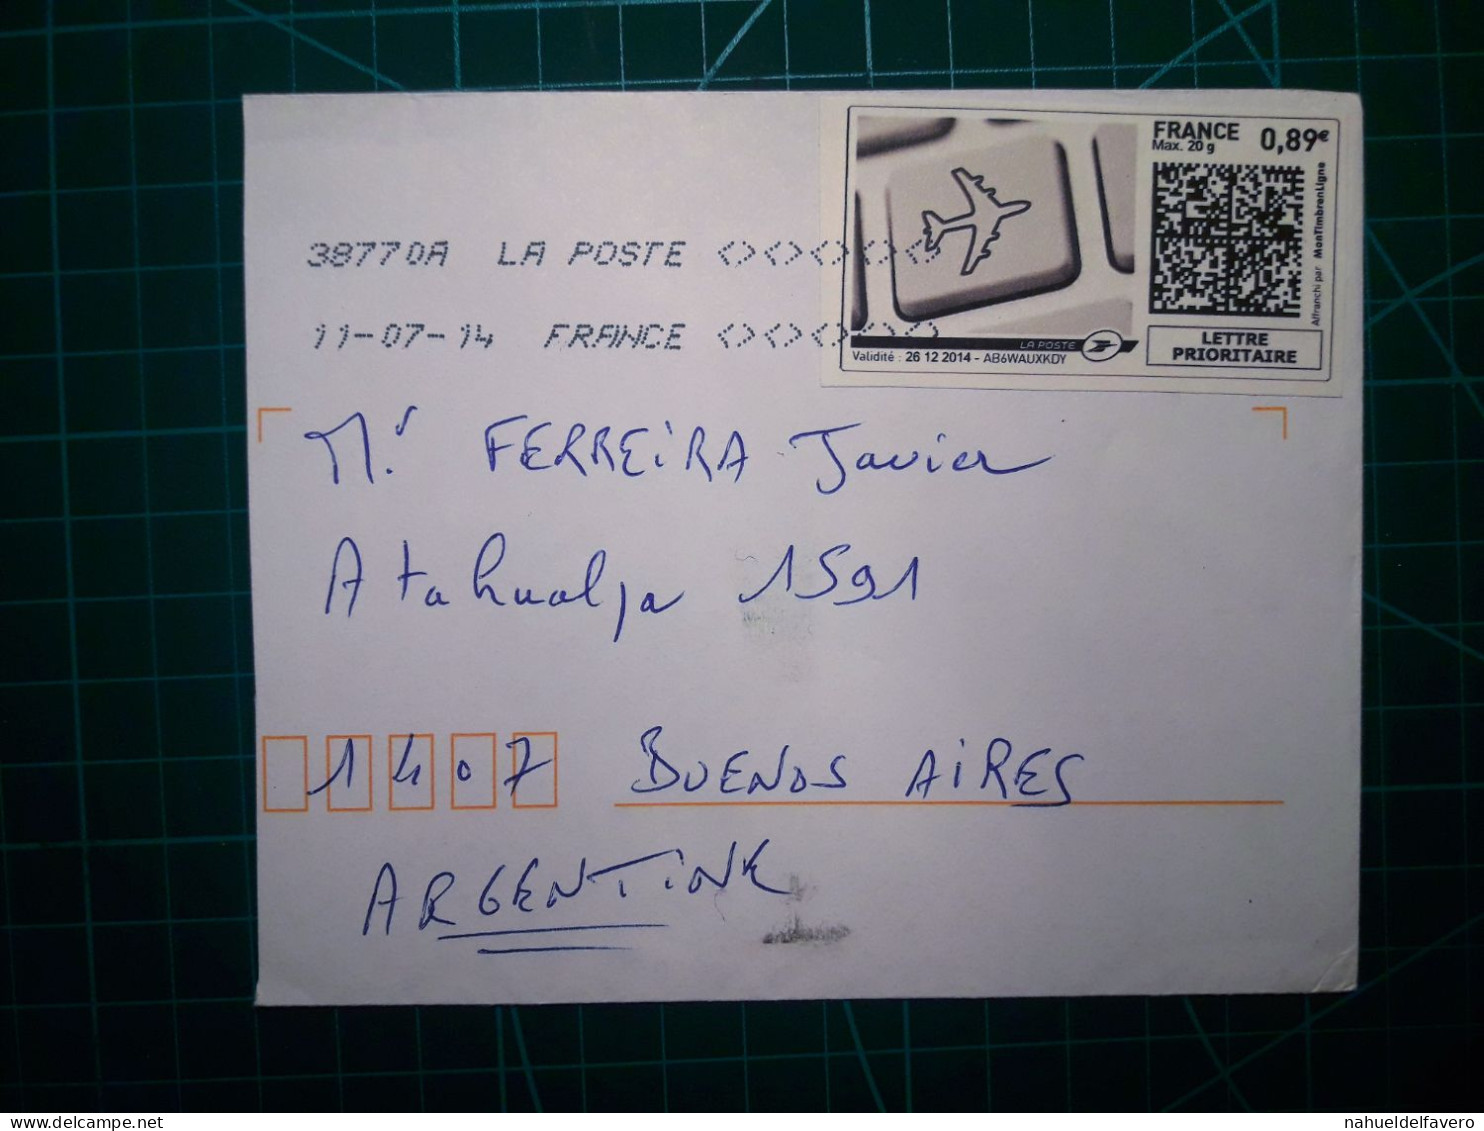 FRANCE, Enveloppe Envoyée à Buenos Aires, Argentine Avec Cachet Numérique Et Code QR. Année 2007. - Usati